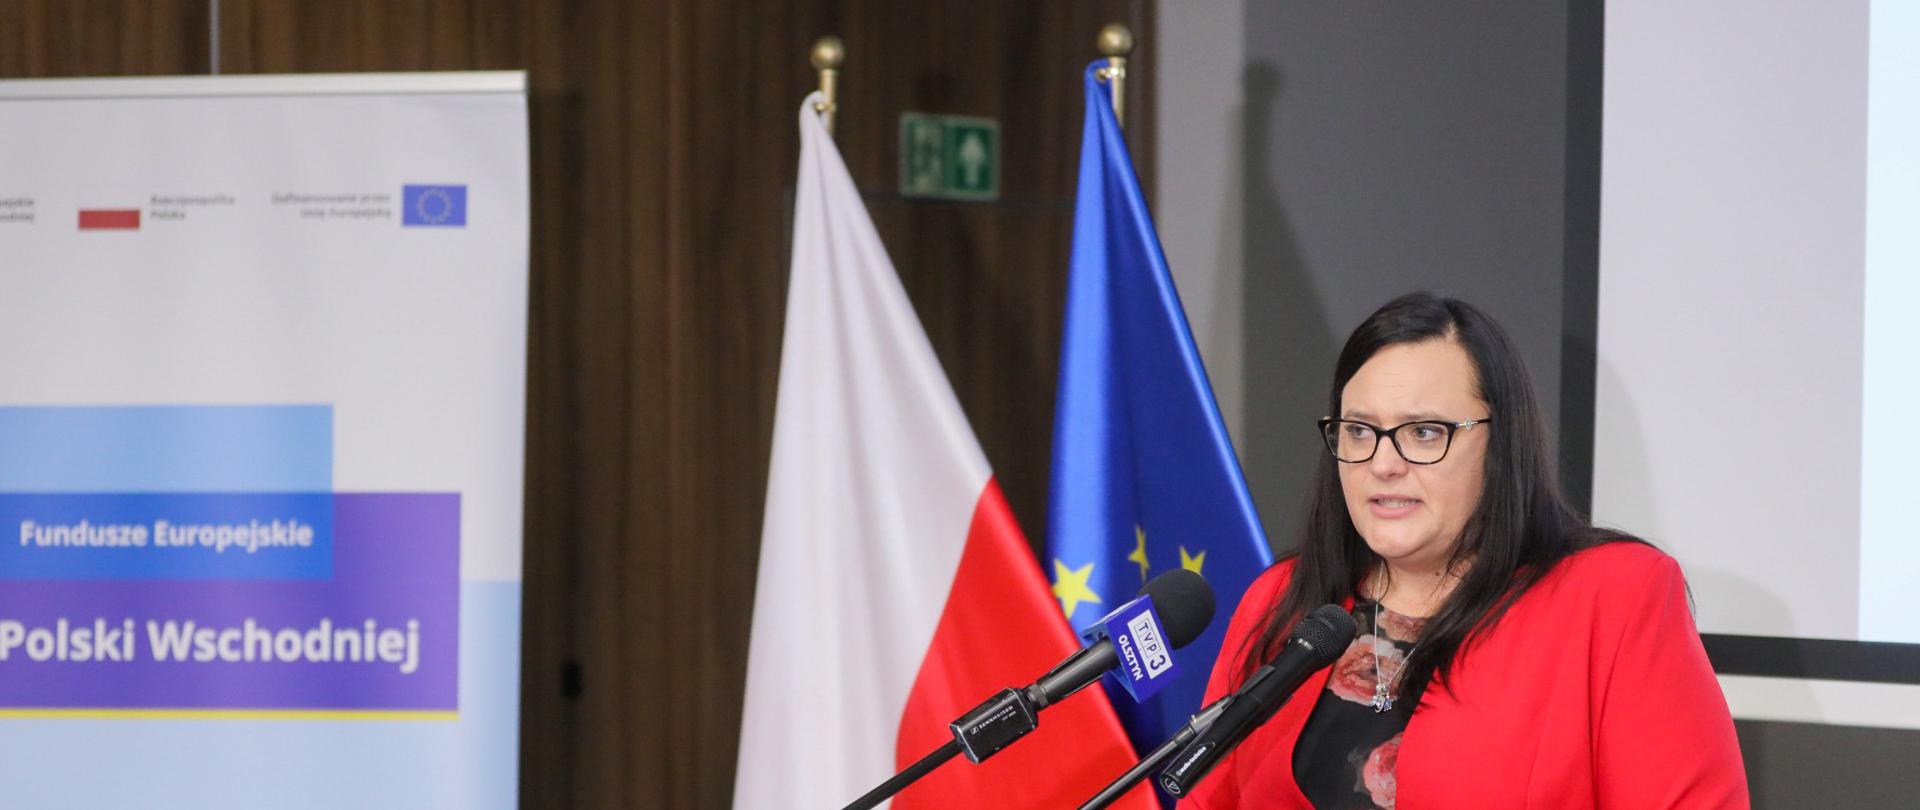 Wiceminister Małgorzata Jarosińska-Jedynak podczas warsztatów FEPW